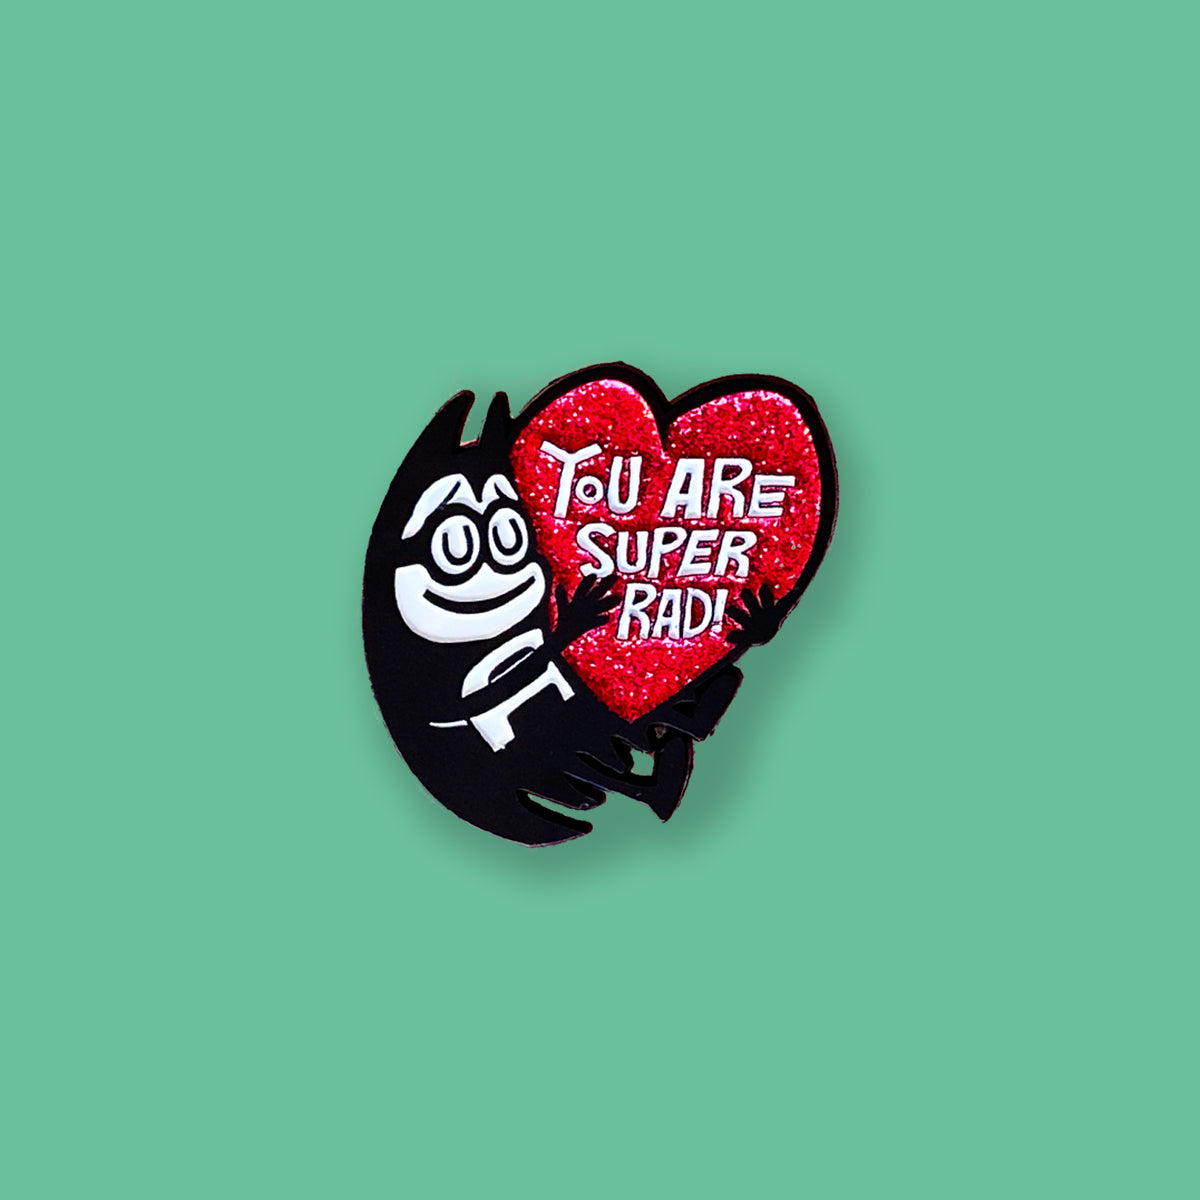 Lil Bat "You Are Super Rad" Deluxe Glitter Pin